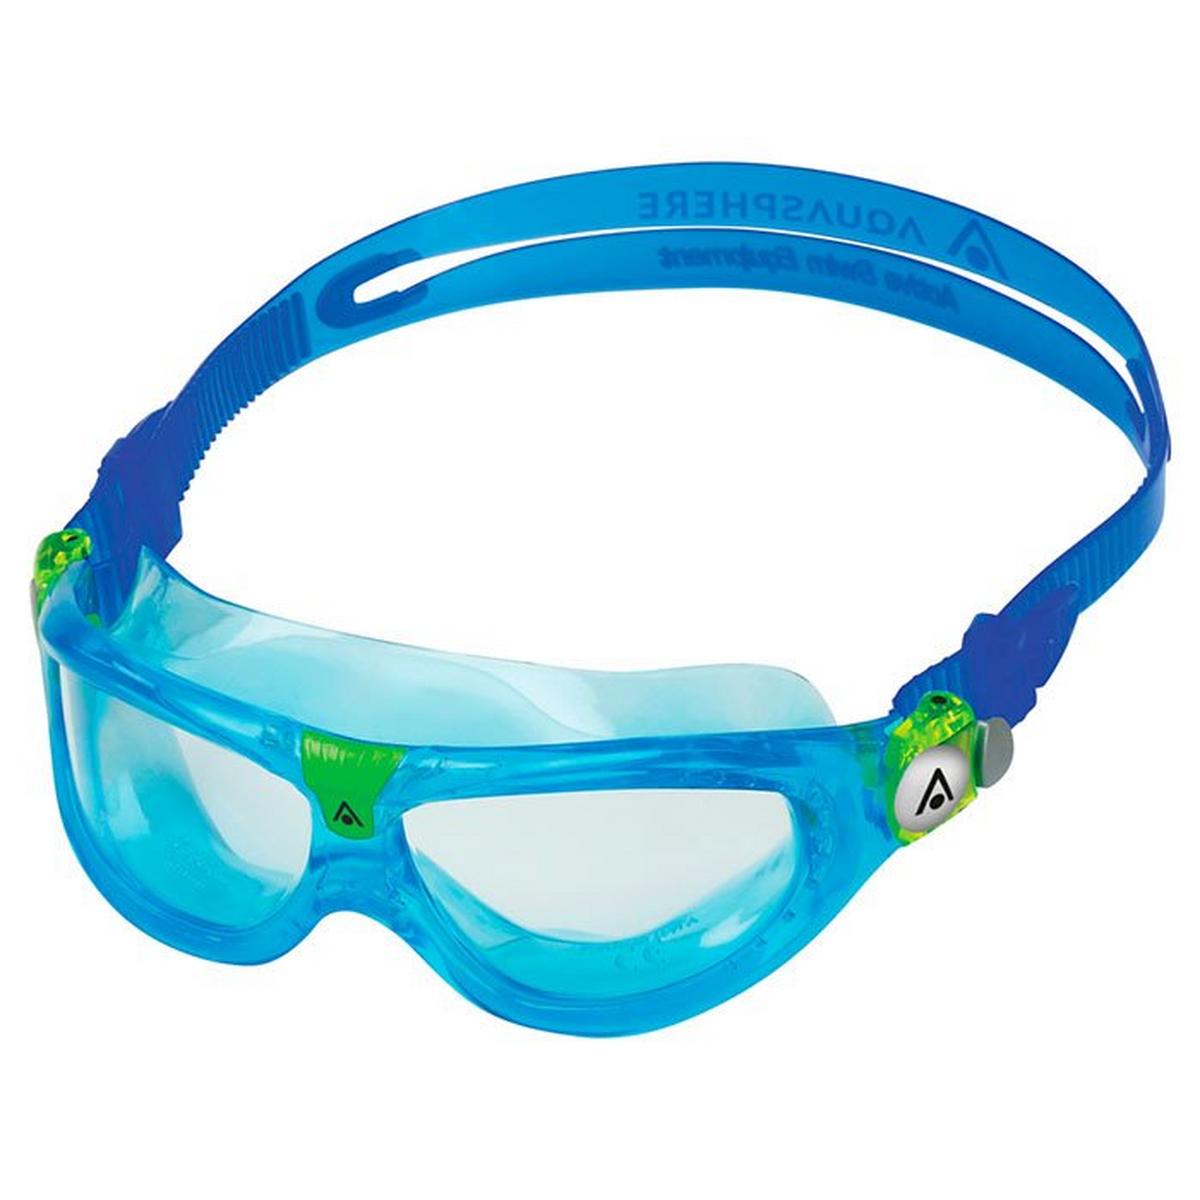 Masque de natation Seal Kid 2 pour enfants